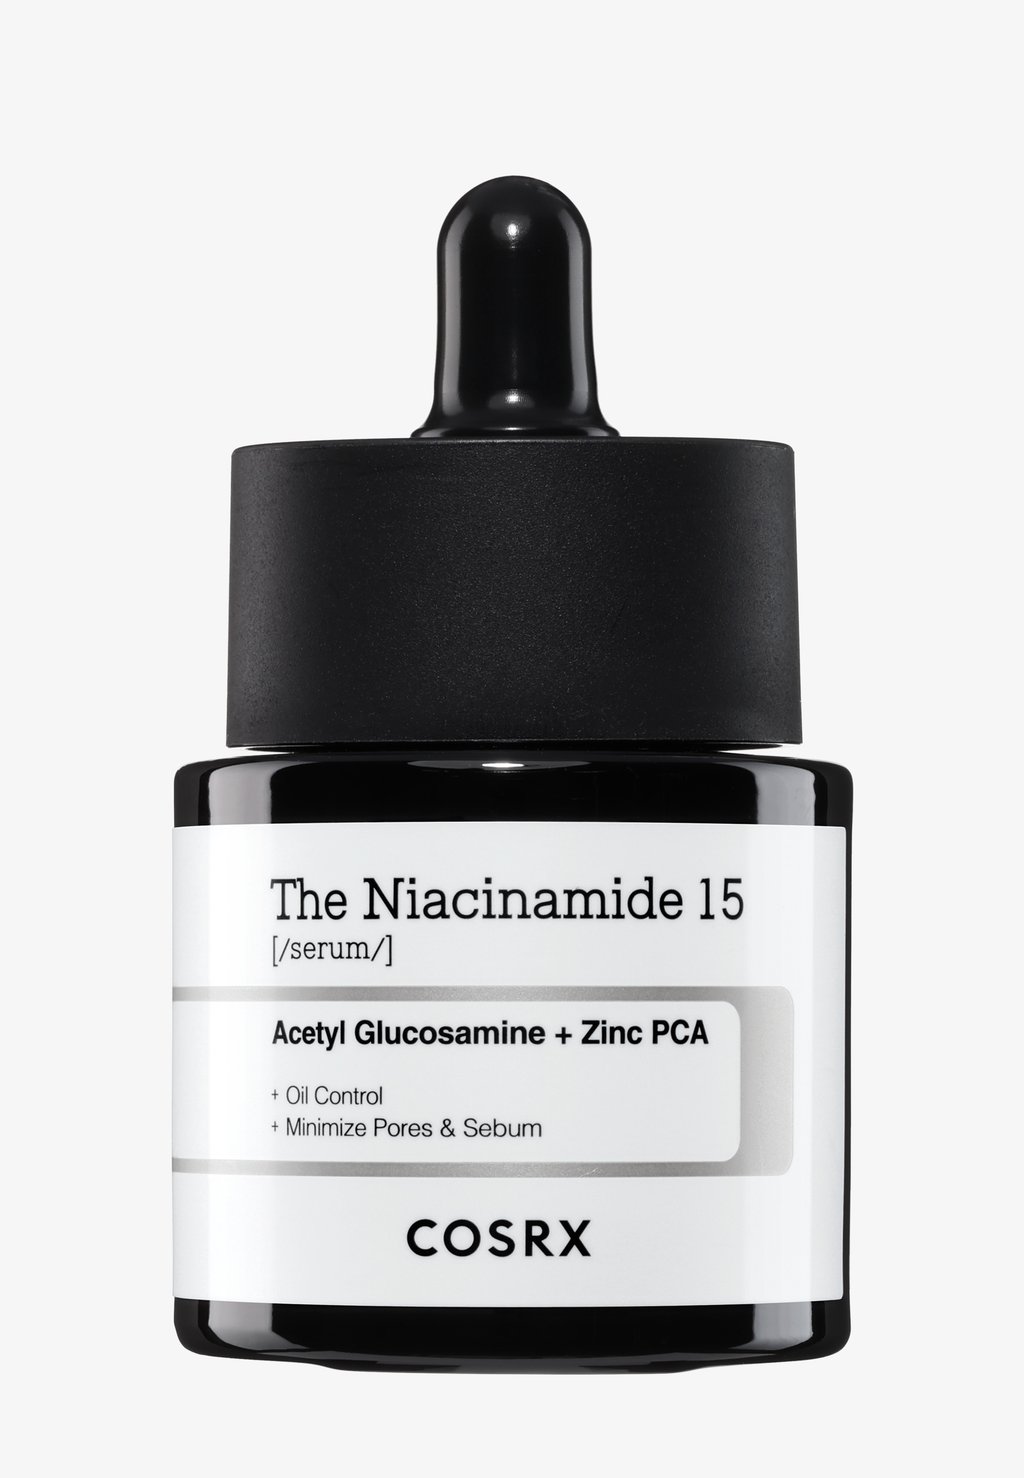 Сыворотка The Niacinamide 15 Serum COSRX cosrx serum the niacinamide 15 0 67 fl oz 20 ml